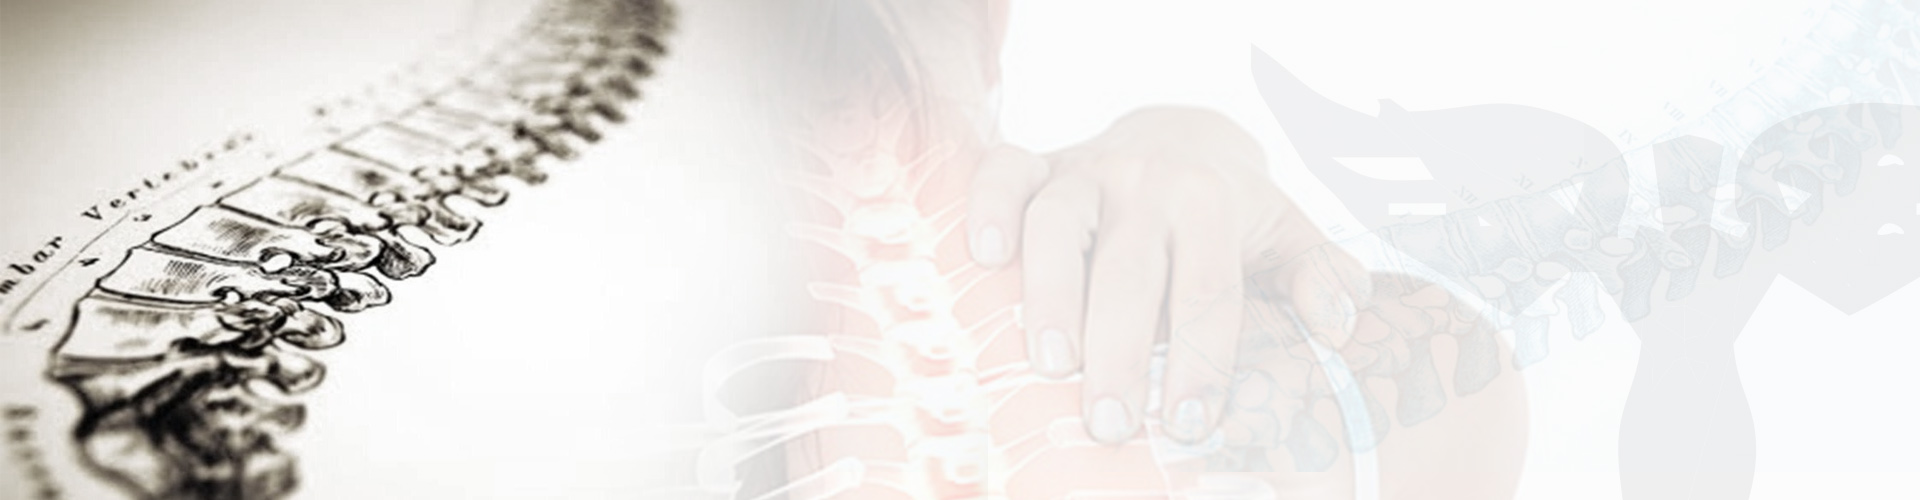 Zgaga- rola osteopaty w terapii problemów trzewnych